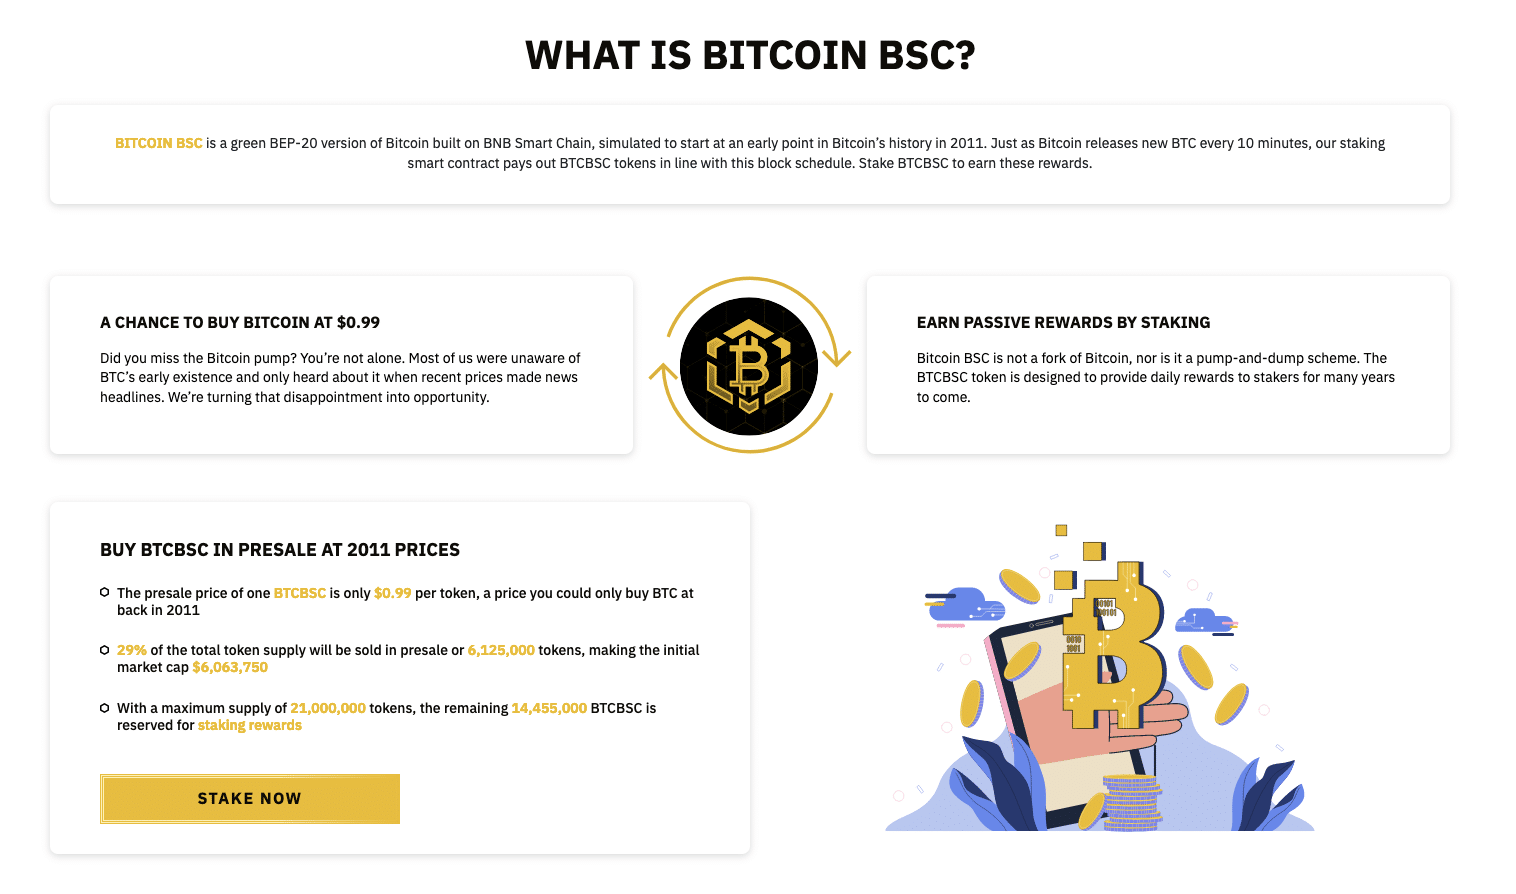 Bitcoin BSC stellt aktuell eine der interessantesten Investitionsmöglichkeiten dar.